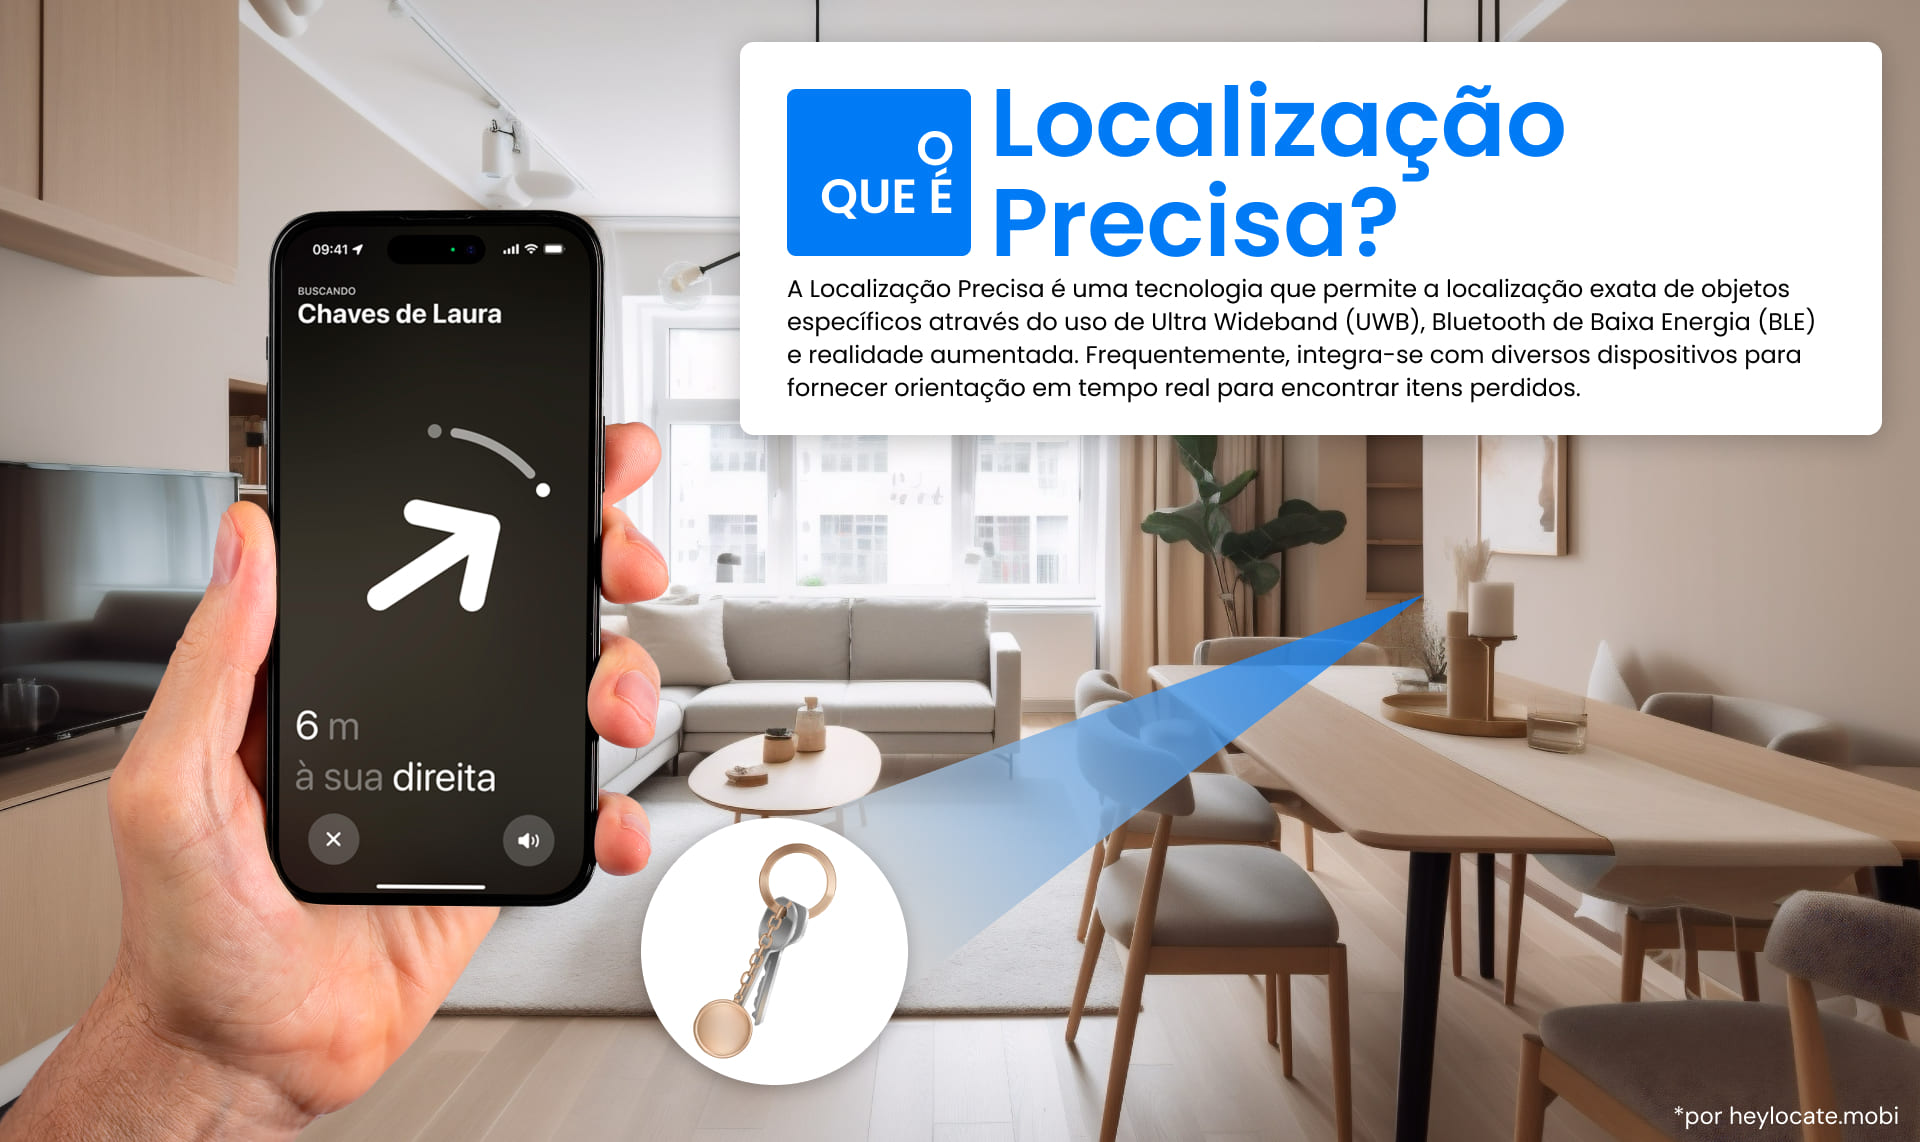 Uma imagem que ilustra o conceito de Precision Finding usando um smartphone para localizar um objeto, por exemplo, chaves, destacando o uso da tecnologia UWB e BLE.